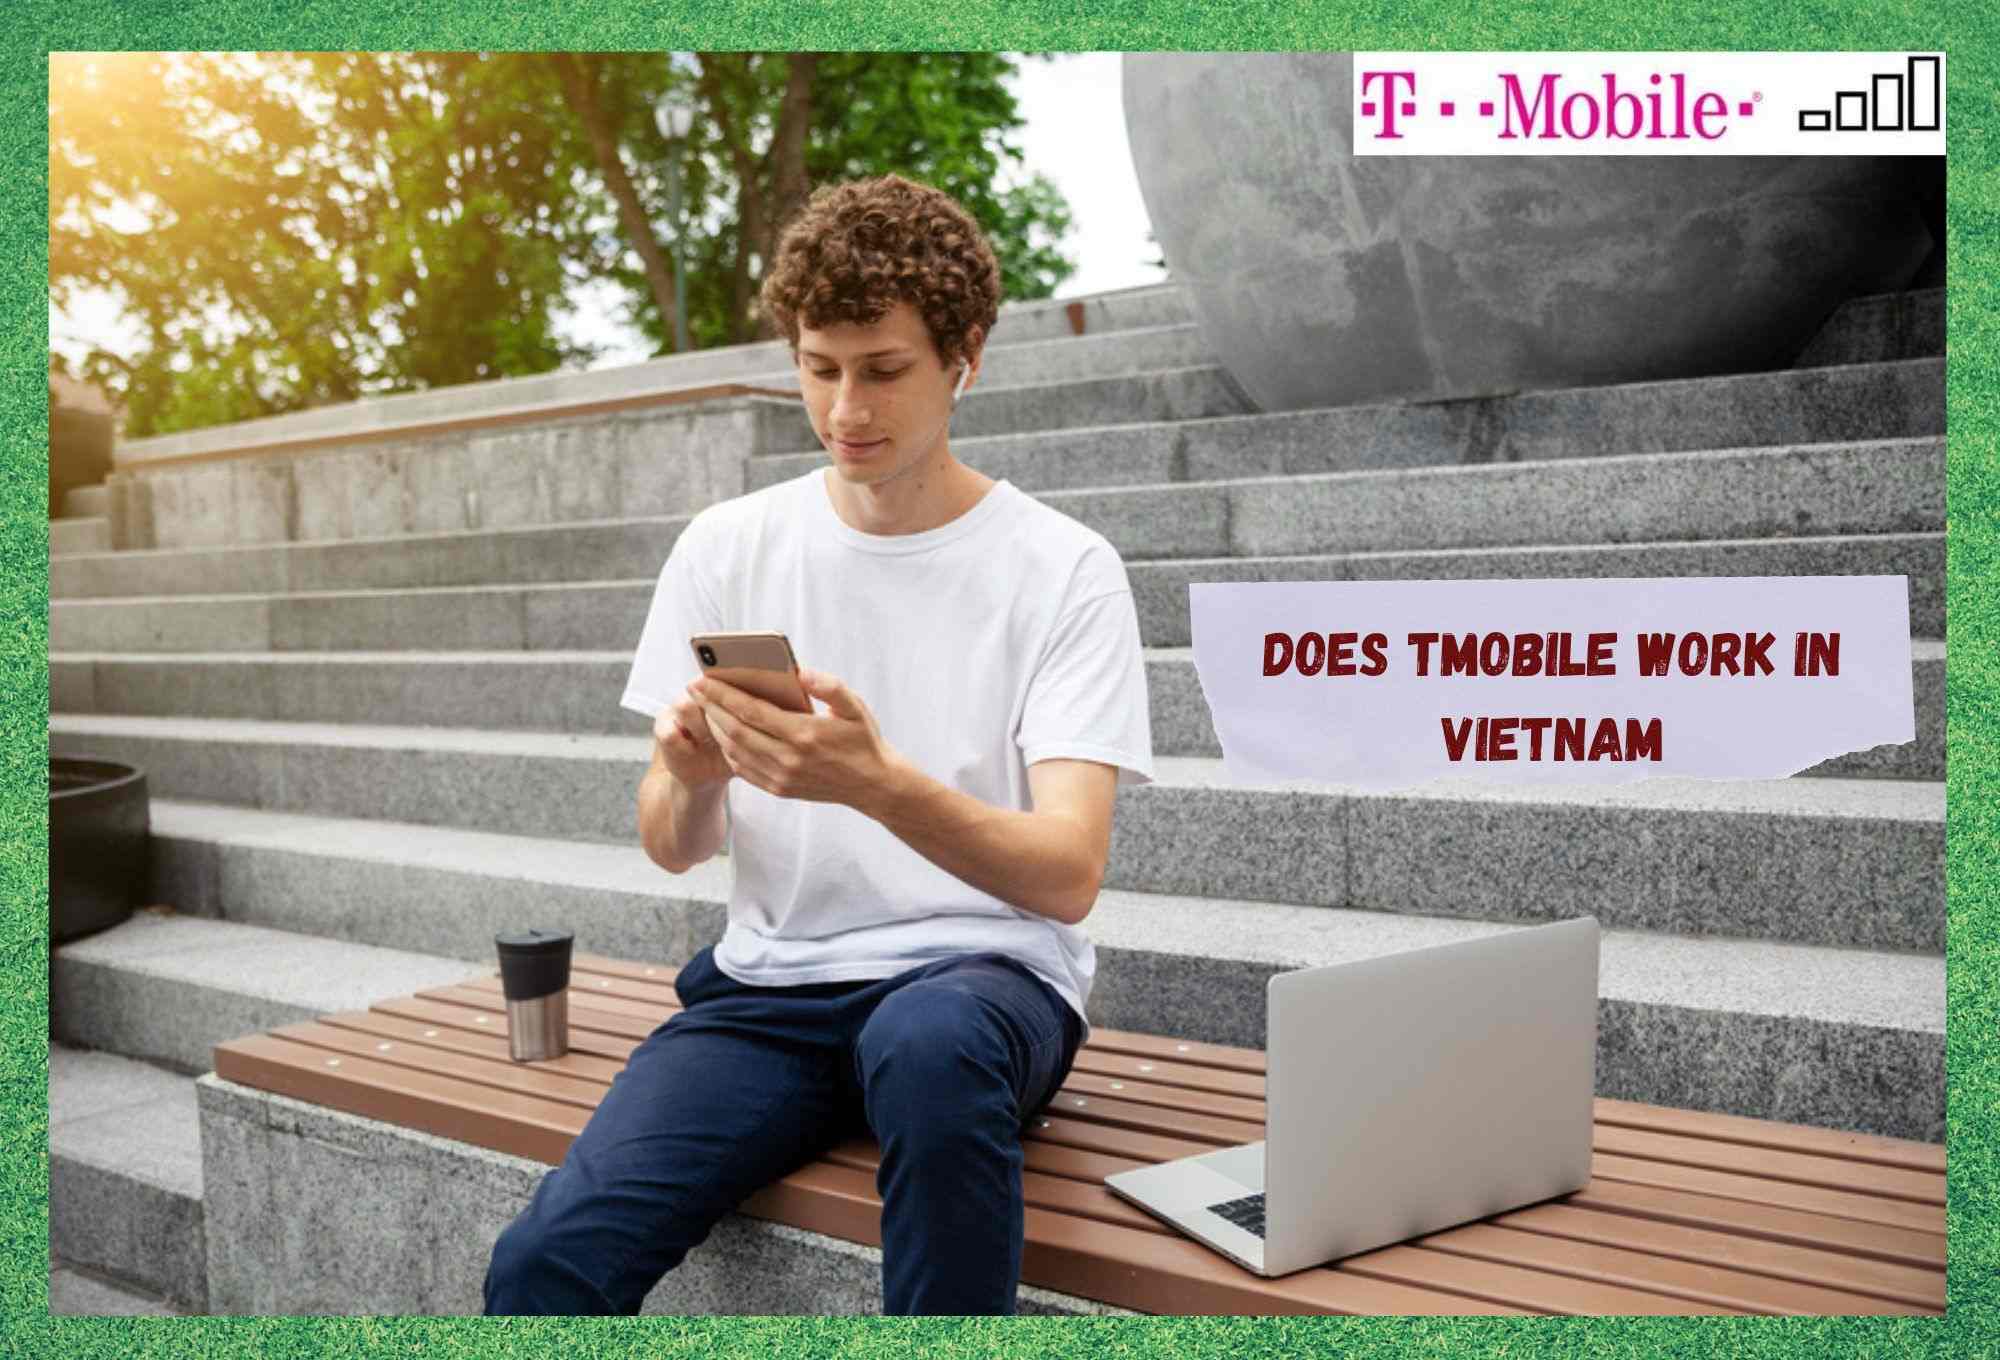 Дали T-Mobile работи во Виетнам? (Одговорено)